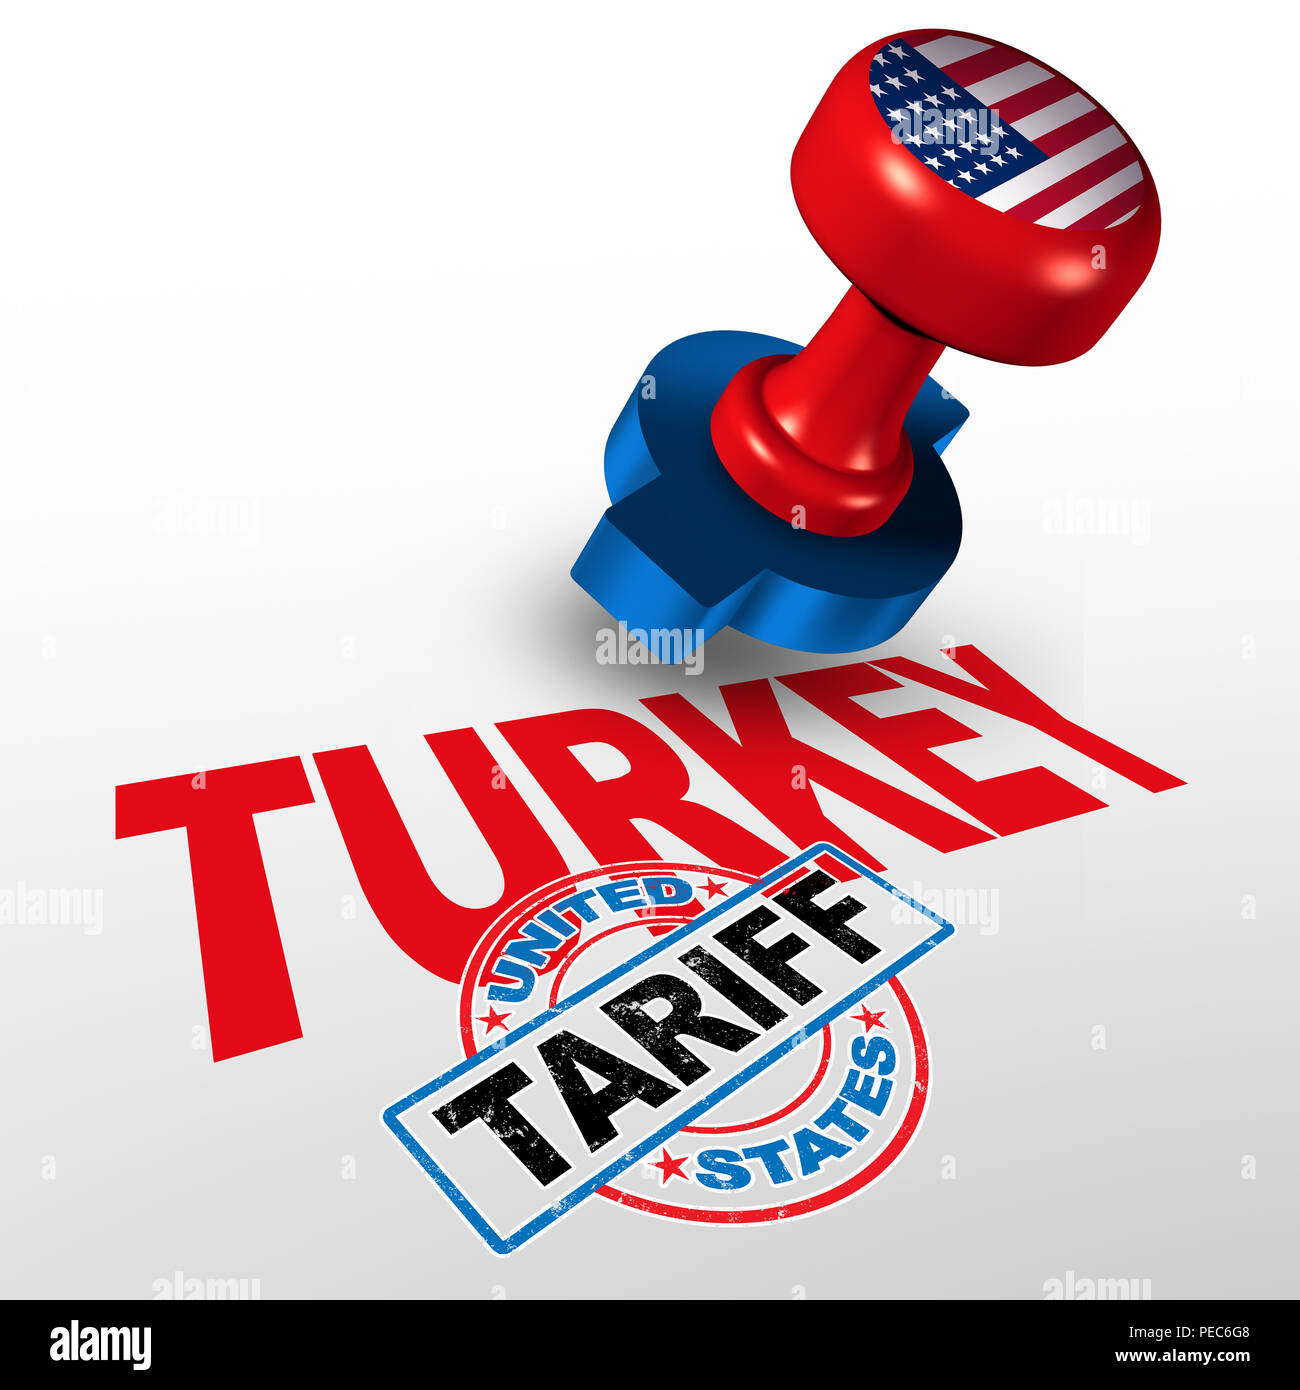 Türkei Vereinigte Staaten Tarif auf türkisch Stahl und Aluminium Tarife wie einen Stempel auf Text als wirtschaftliche Handels Besteuerung Streit über Import und Export. Stockfoto